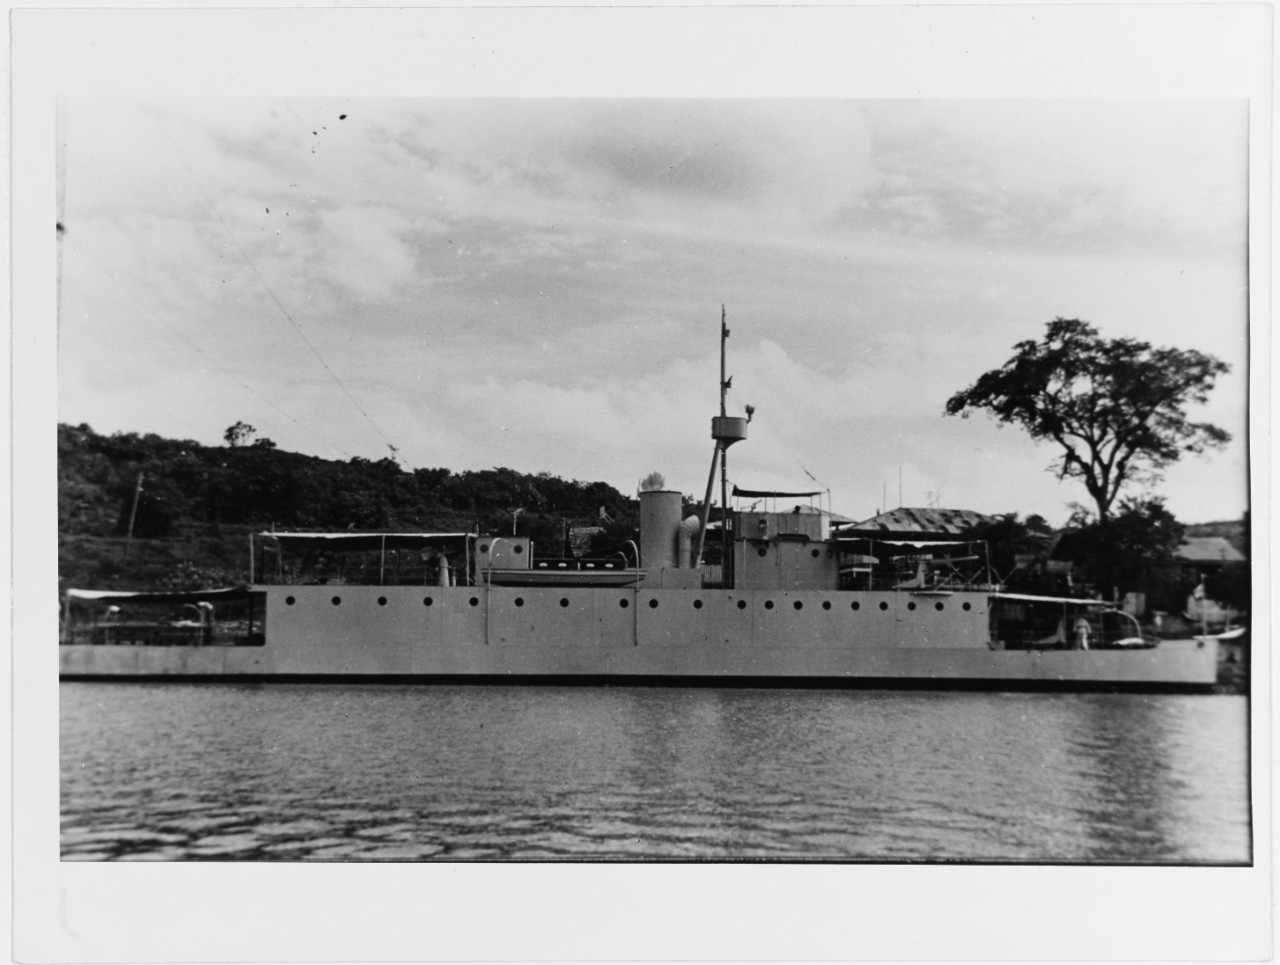 AMAZONAS (Peruvian River Gunboat, 1934)